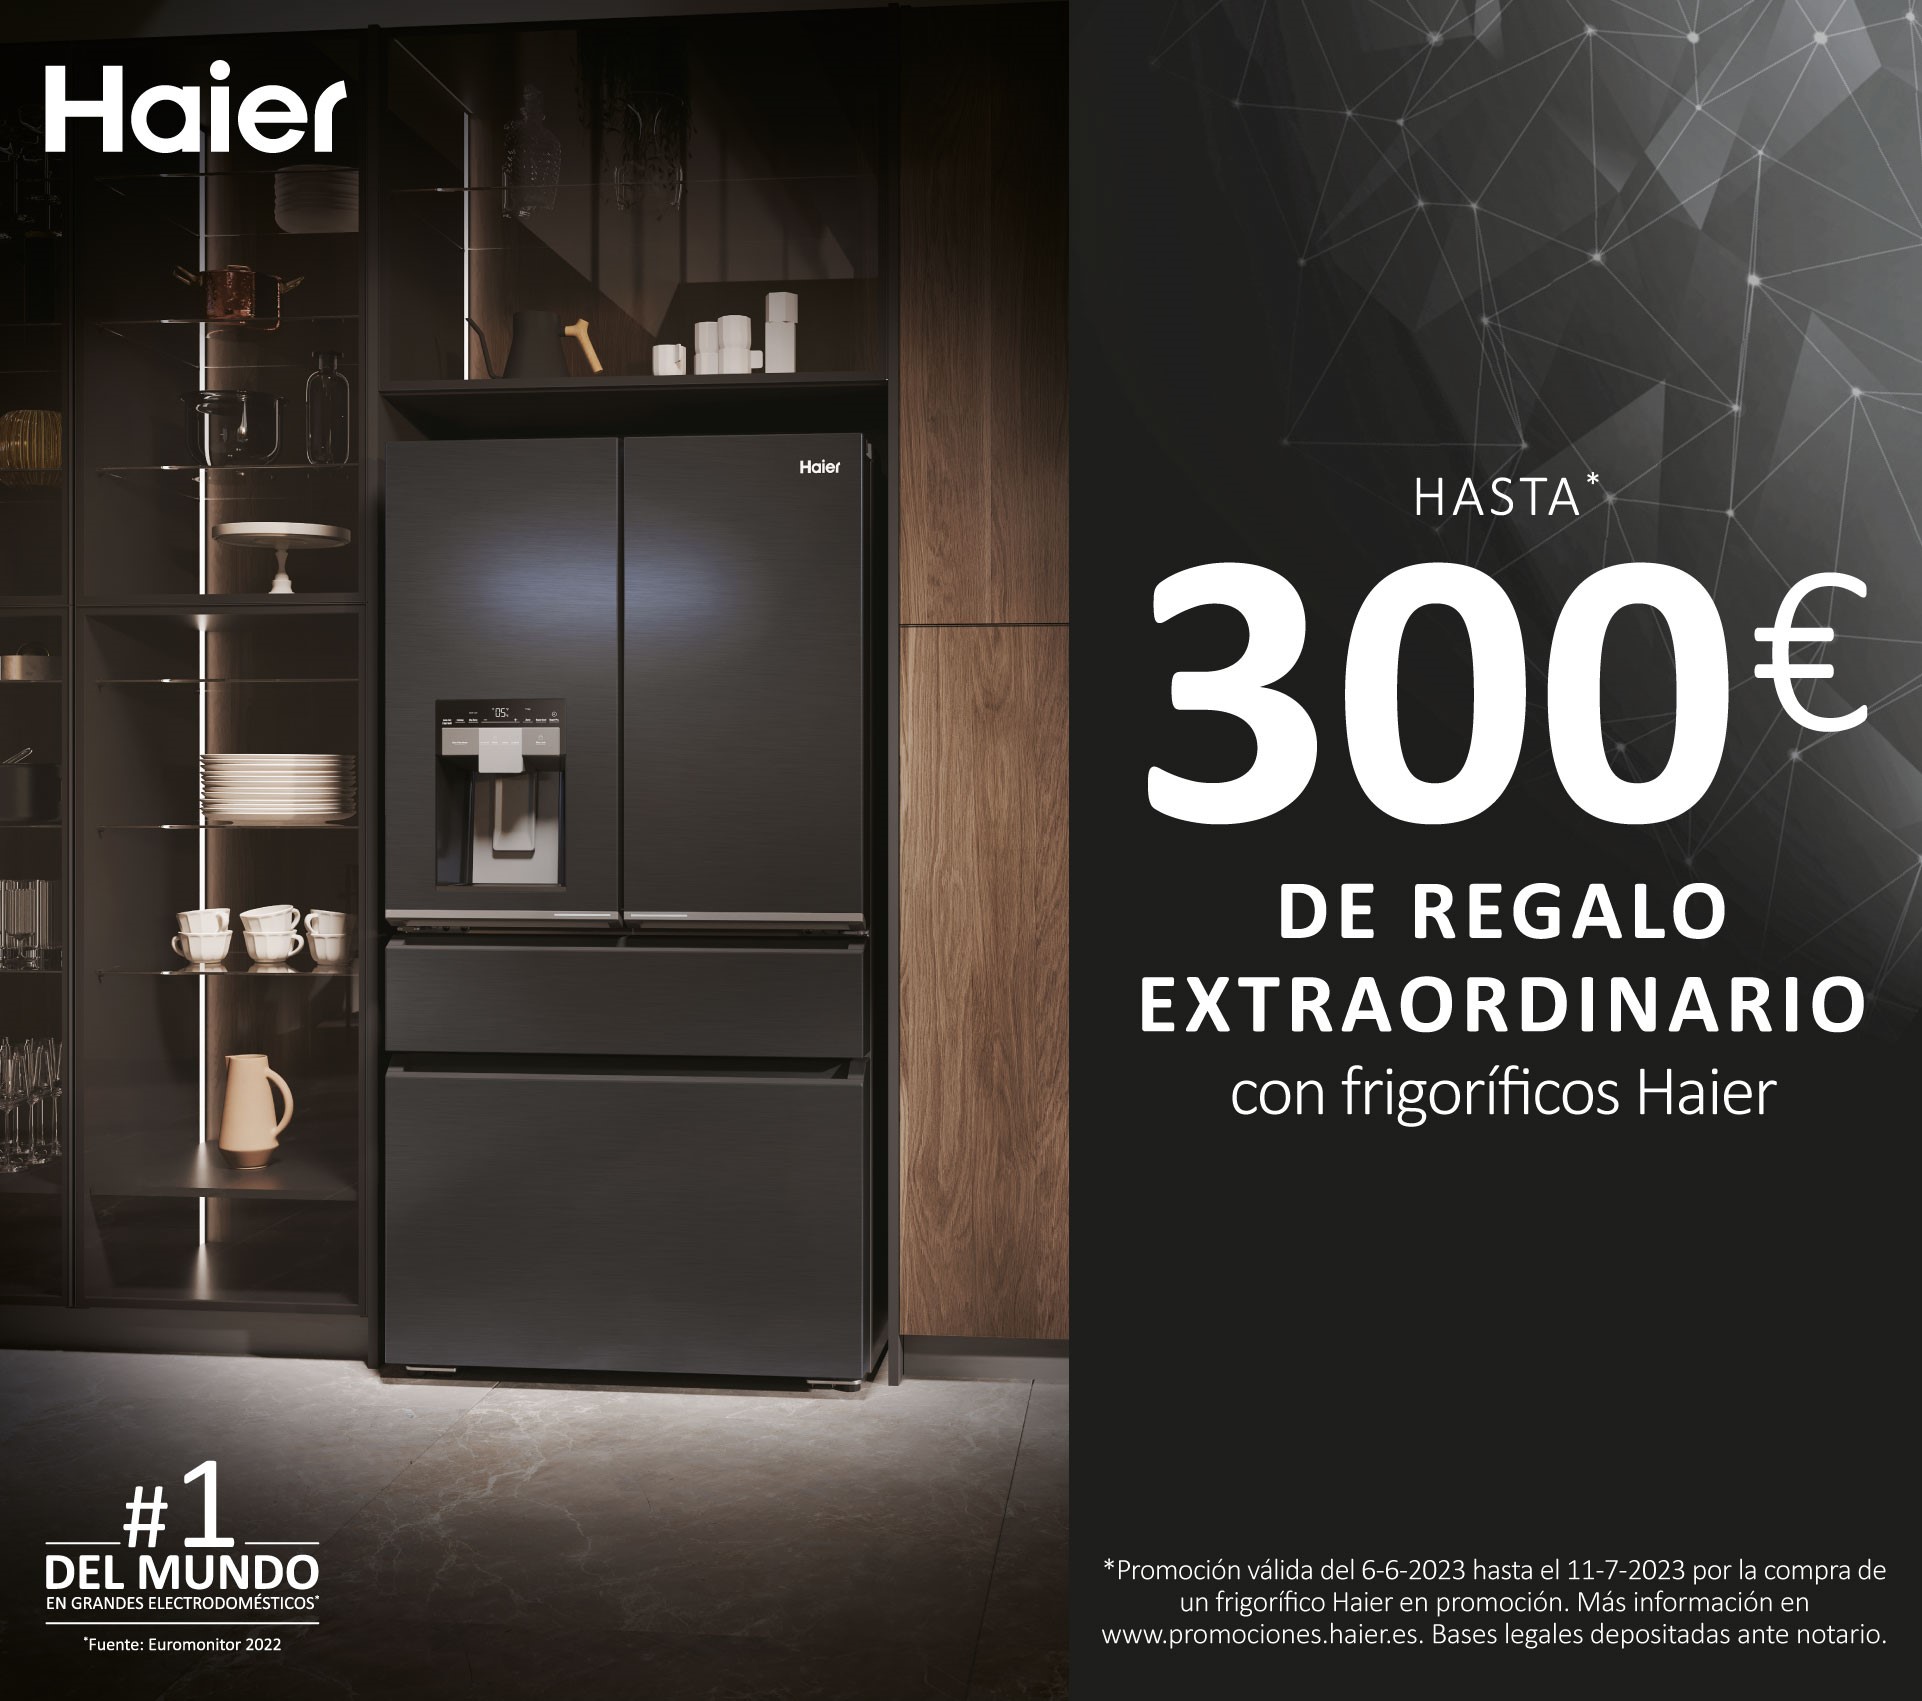 Llévate hasta 300€ de regalo extraordinario por la compra de tu frigorífico Haier